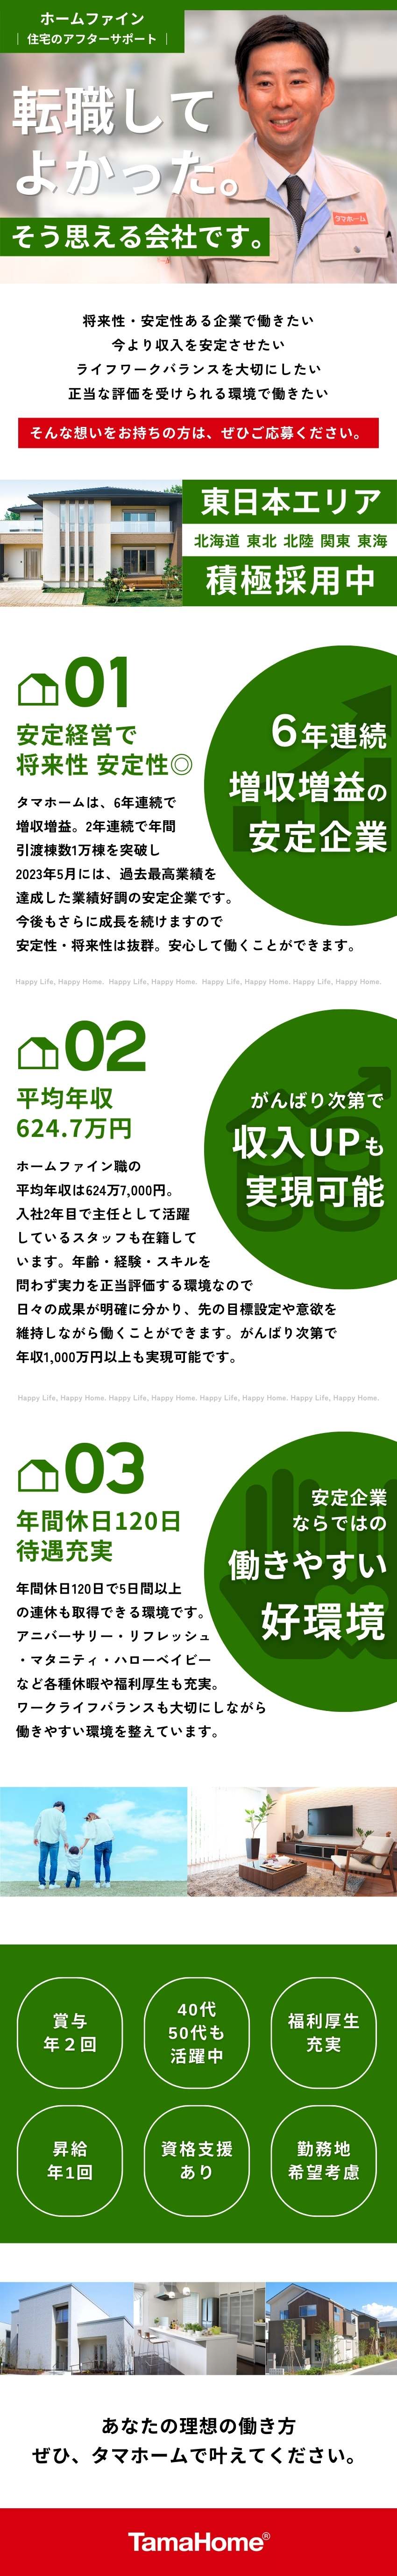 タマホーム株式会社【プライム市場】 住宅のアフターサポート／年休120日／歩合給あり／東日本